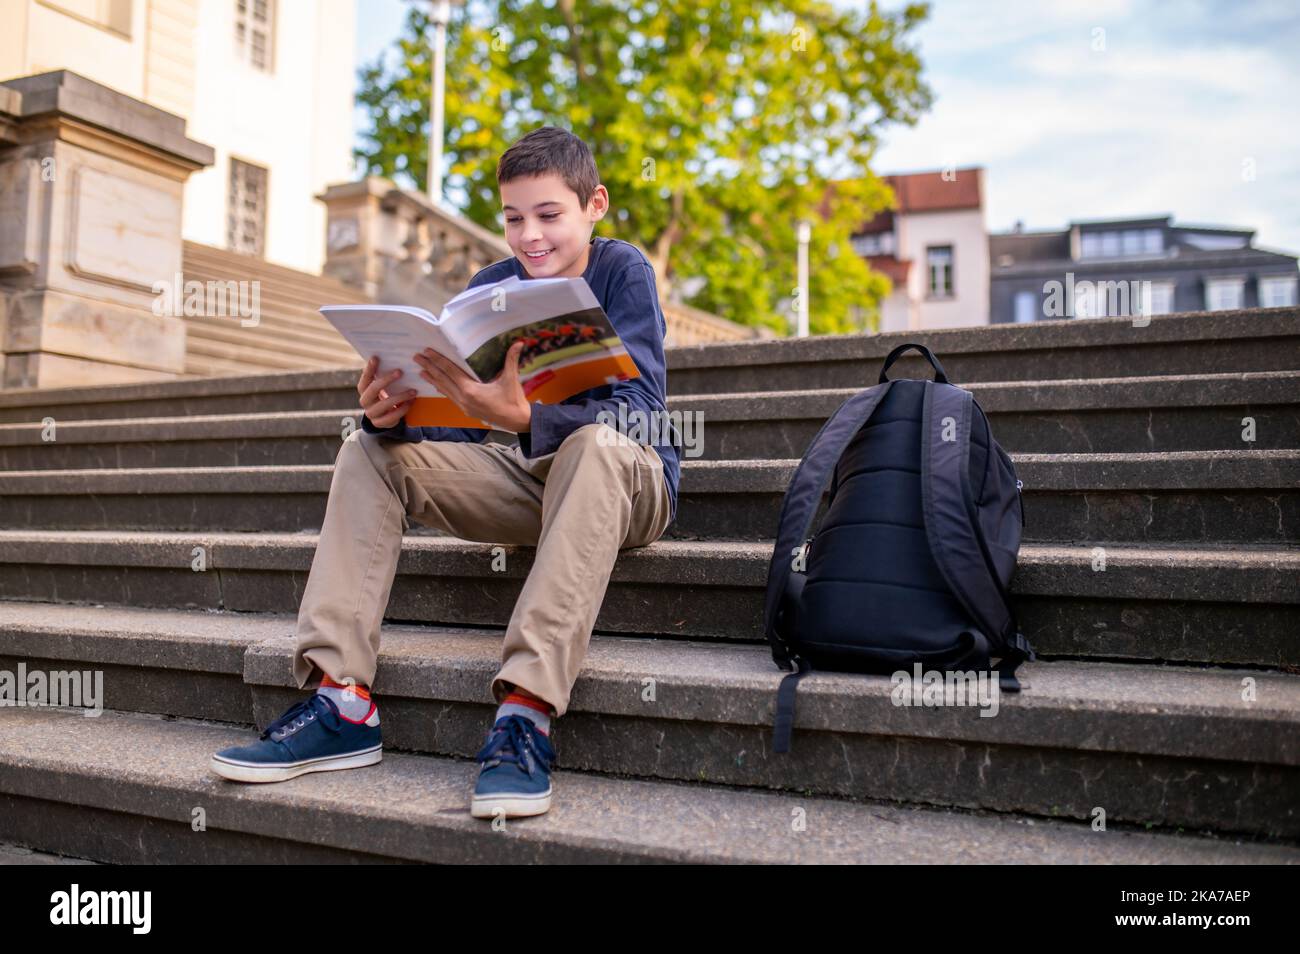 Un adolescent mignon lisant un livre assis sur les escaliers Banque D'Images